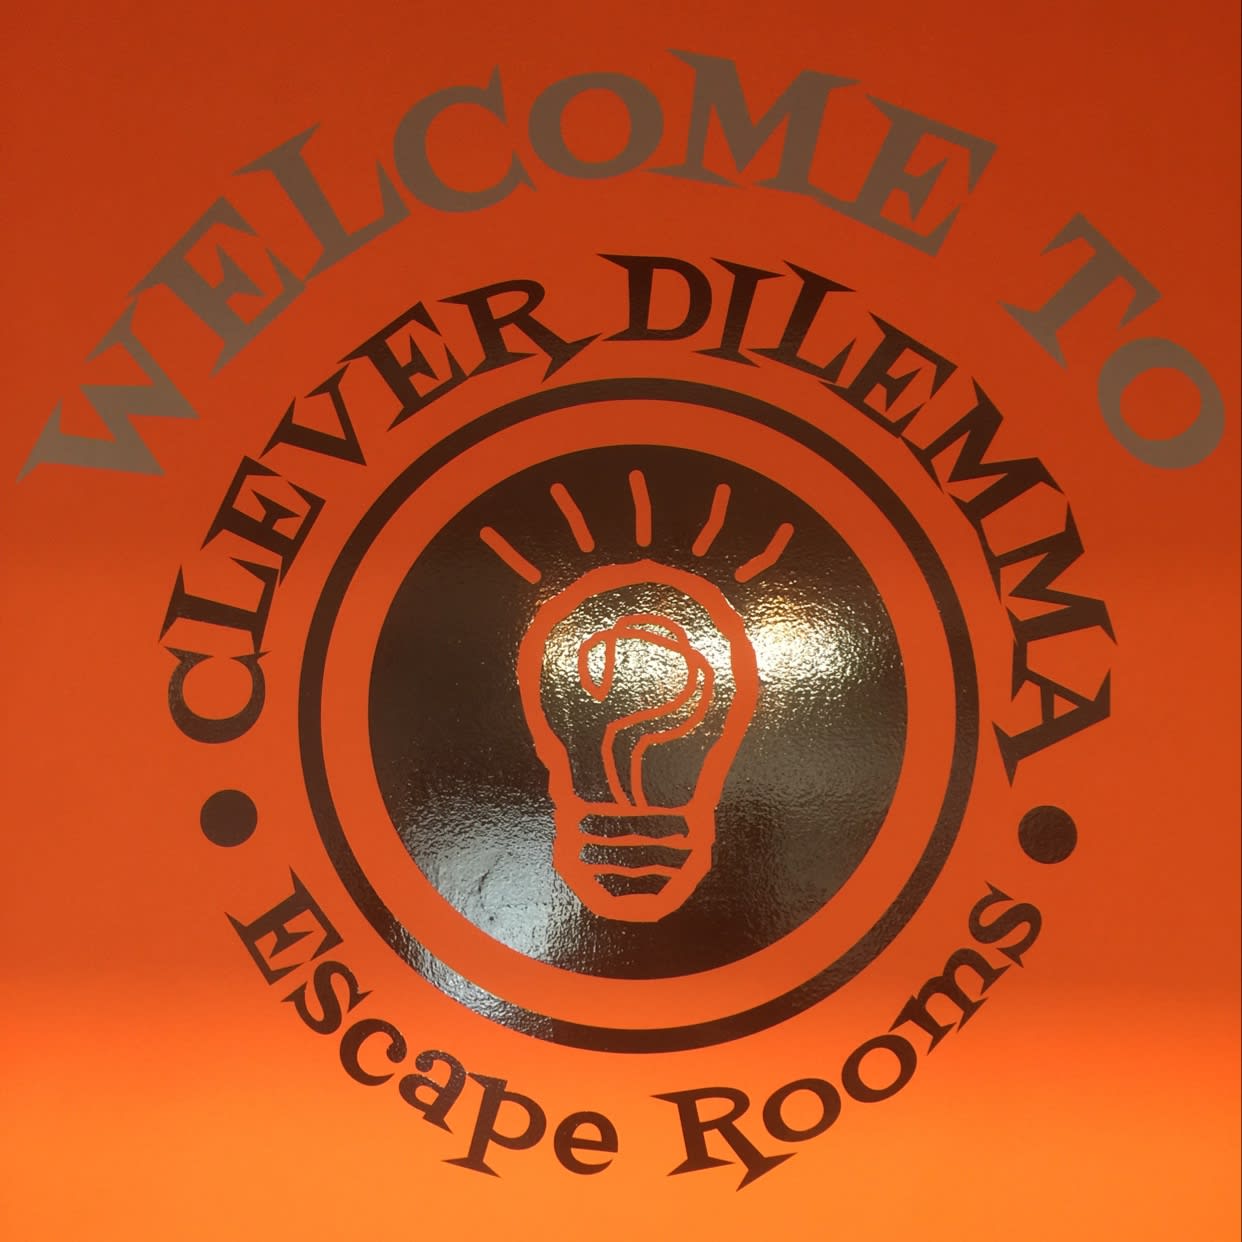 Clever Dilemma Escape Rooms Faversham 01795 535722